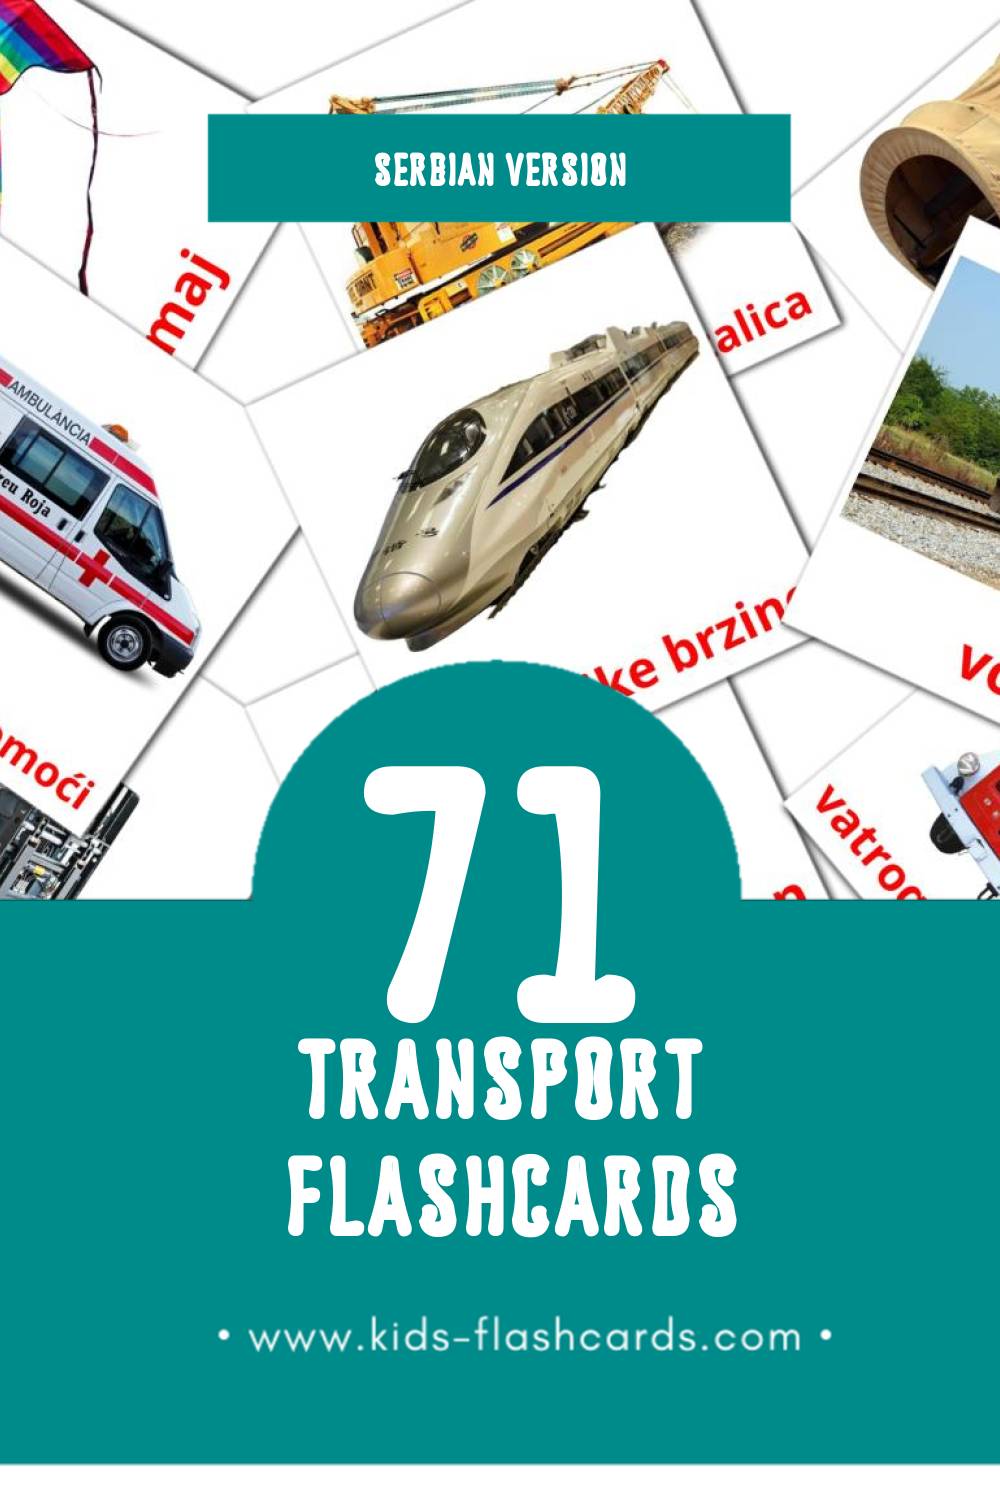 Visual Prevozna sredstva Flashcards for Toddlers (71 cards in Serbian)